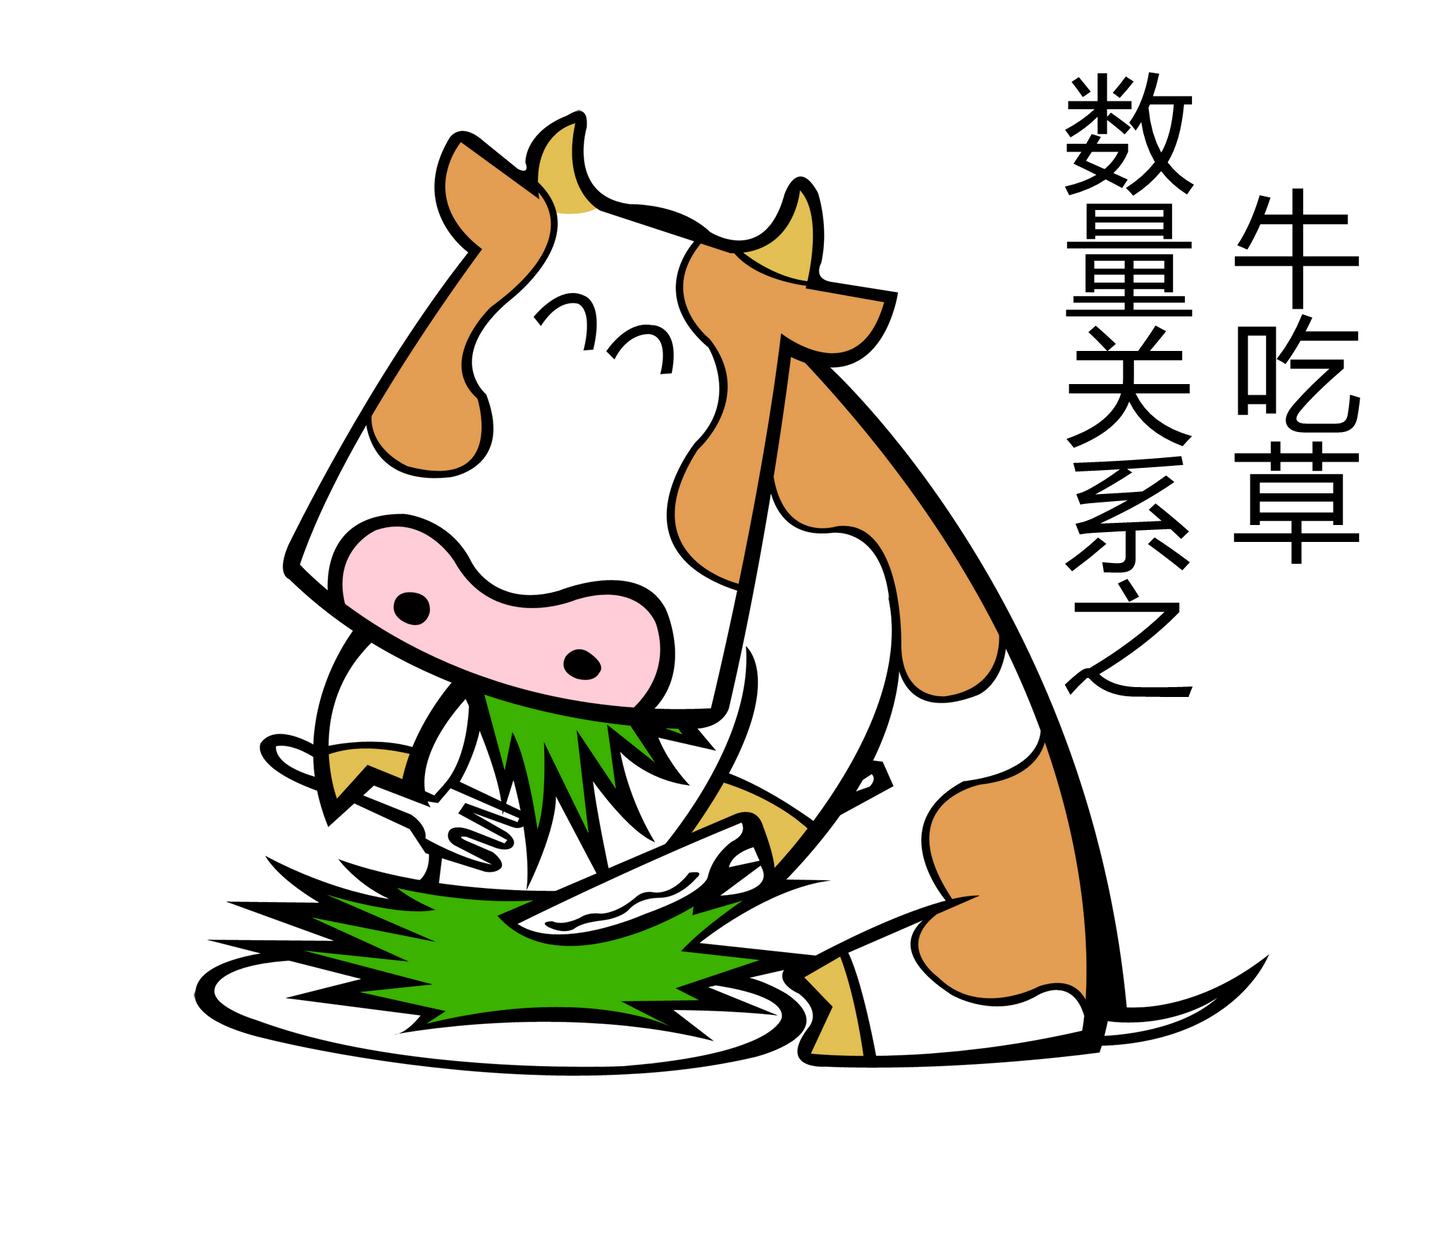 农场水牛吃草. 农村动物生活符号插图矢量图 向量例证. 插画 包括有 环境, 敌意, 吃草, 艺术, 国内 - 263236803